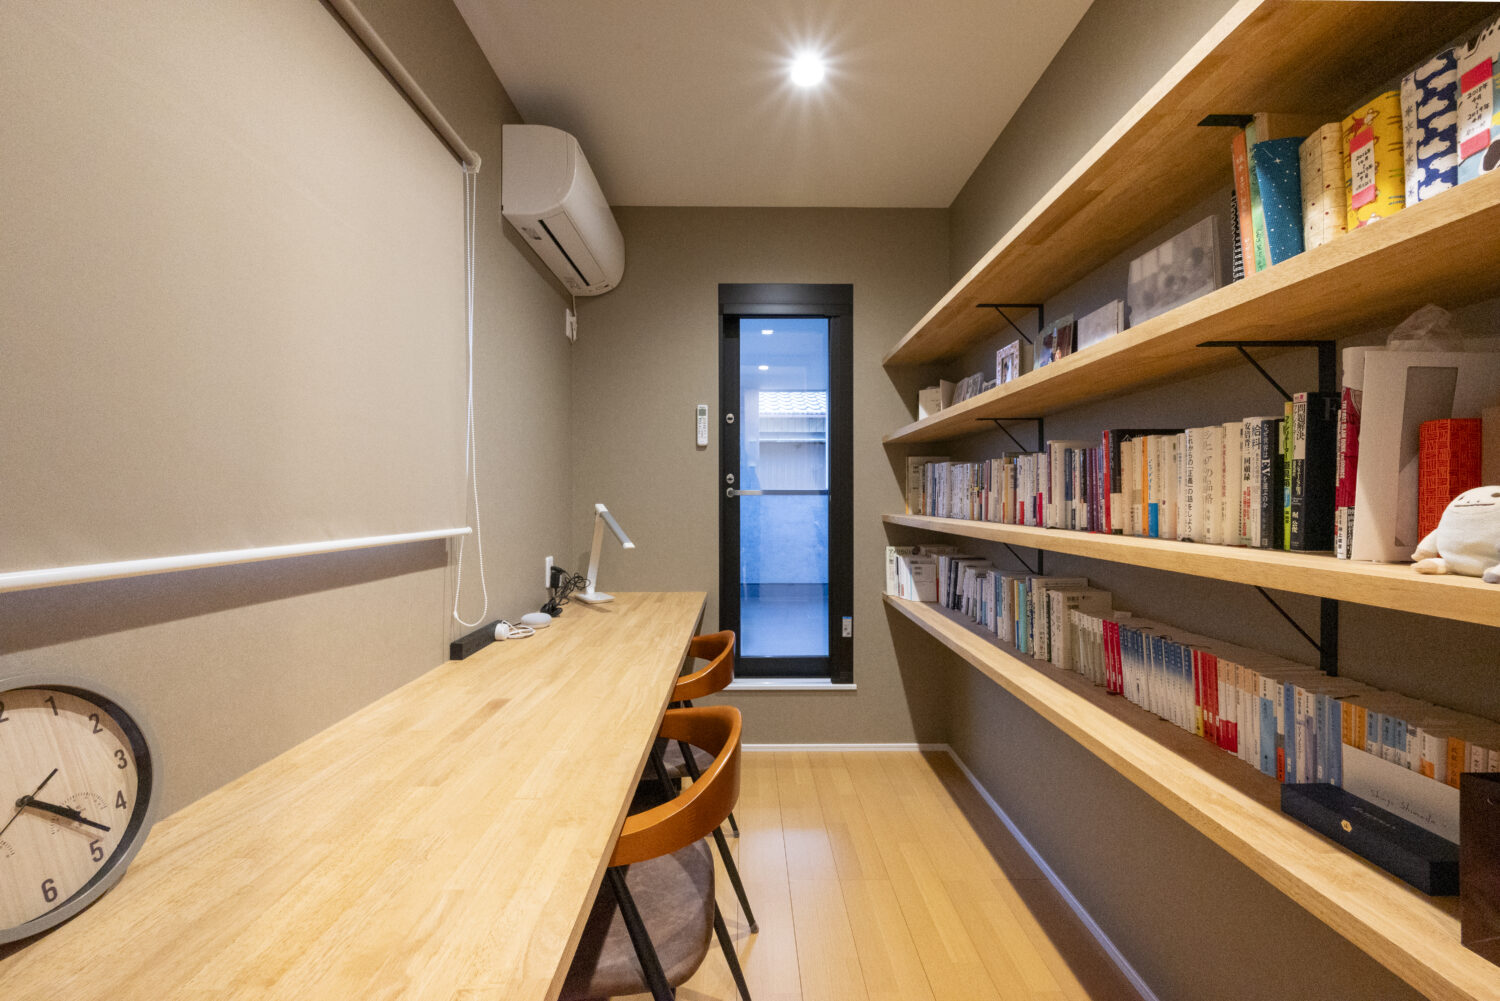 アイデザインホーム
三重の注文住宅　実例
書斎スペースは家族共有の本棚を設け、3人座れるカウンターも有している。
読書や趣味のスペースとして活用でき、奥のドアはバルコニーに繋がる。